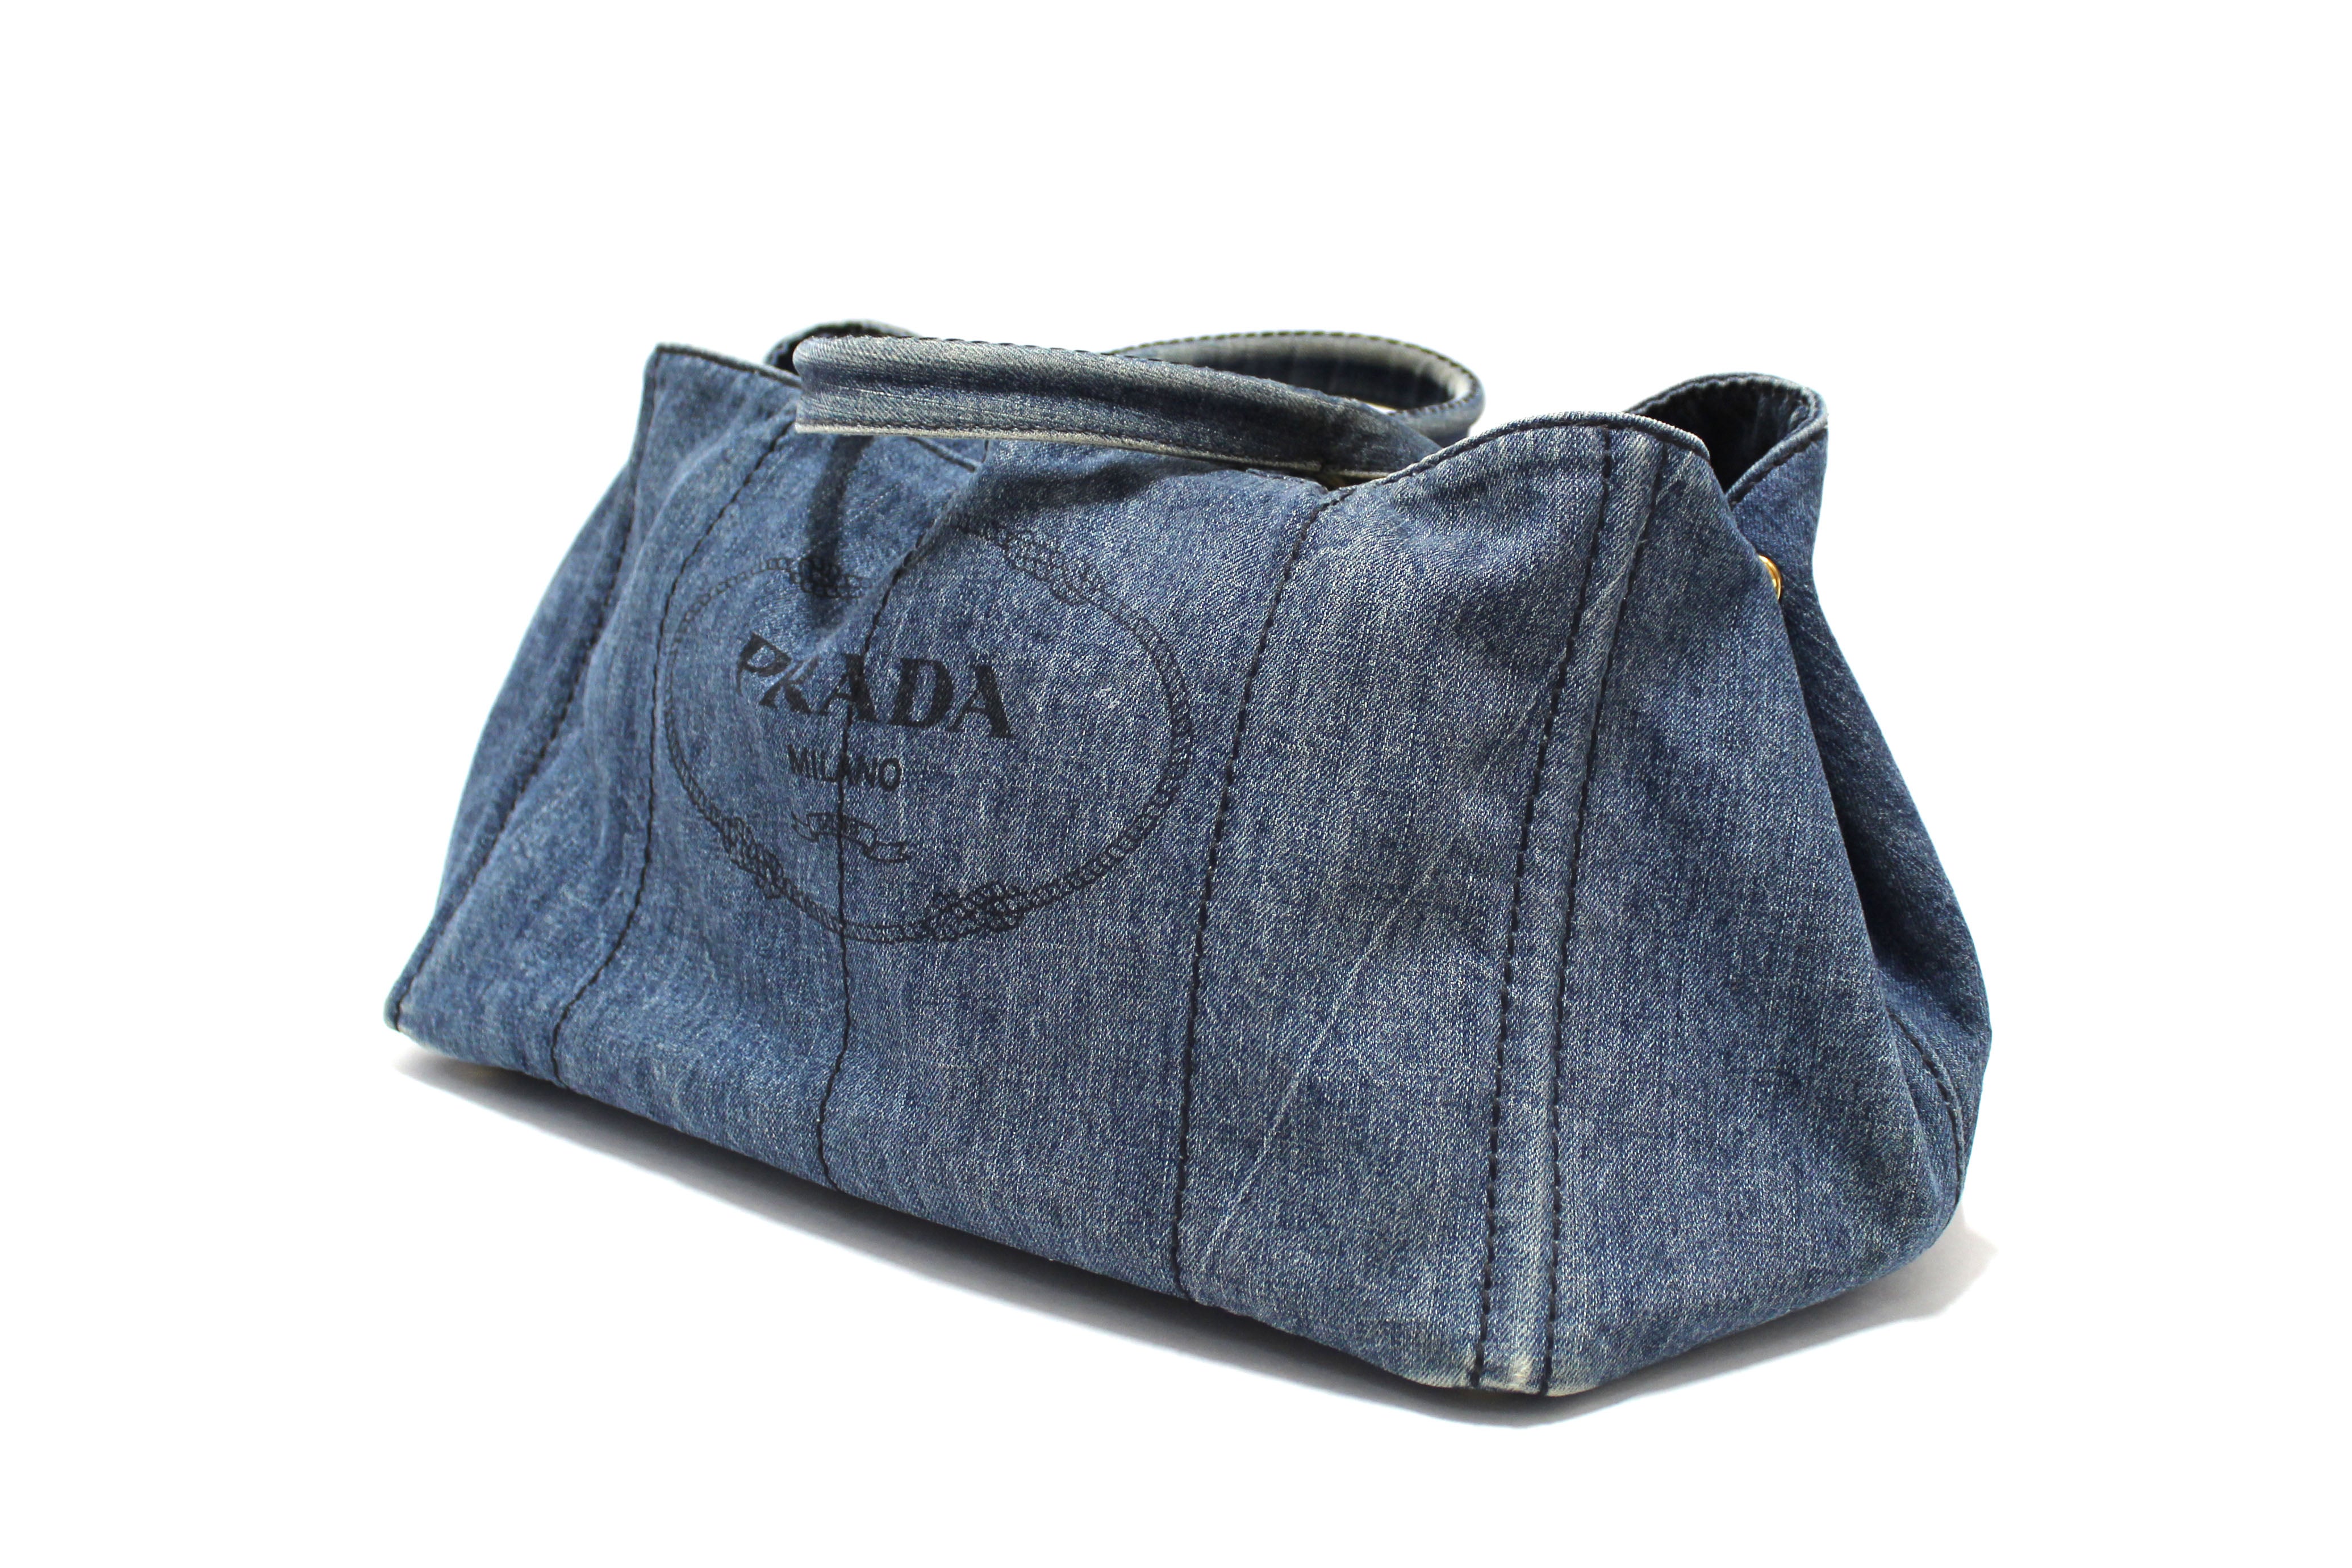 Authentic Prada Blue Large Canapa Denim Tote Handbag